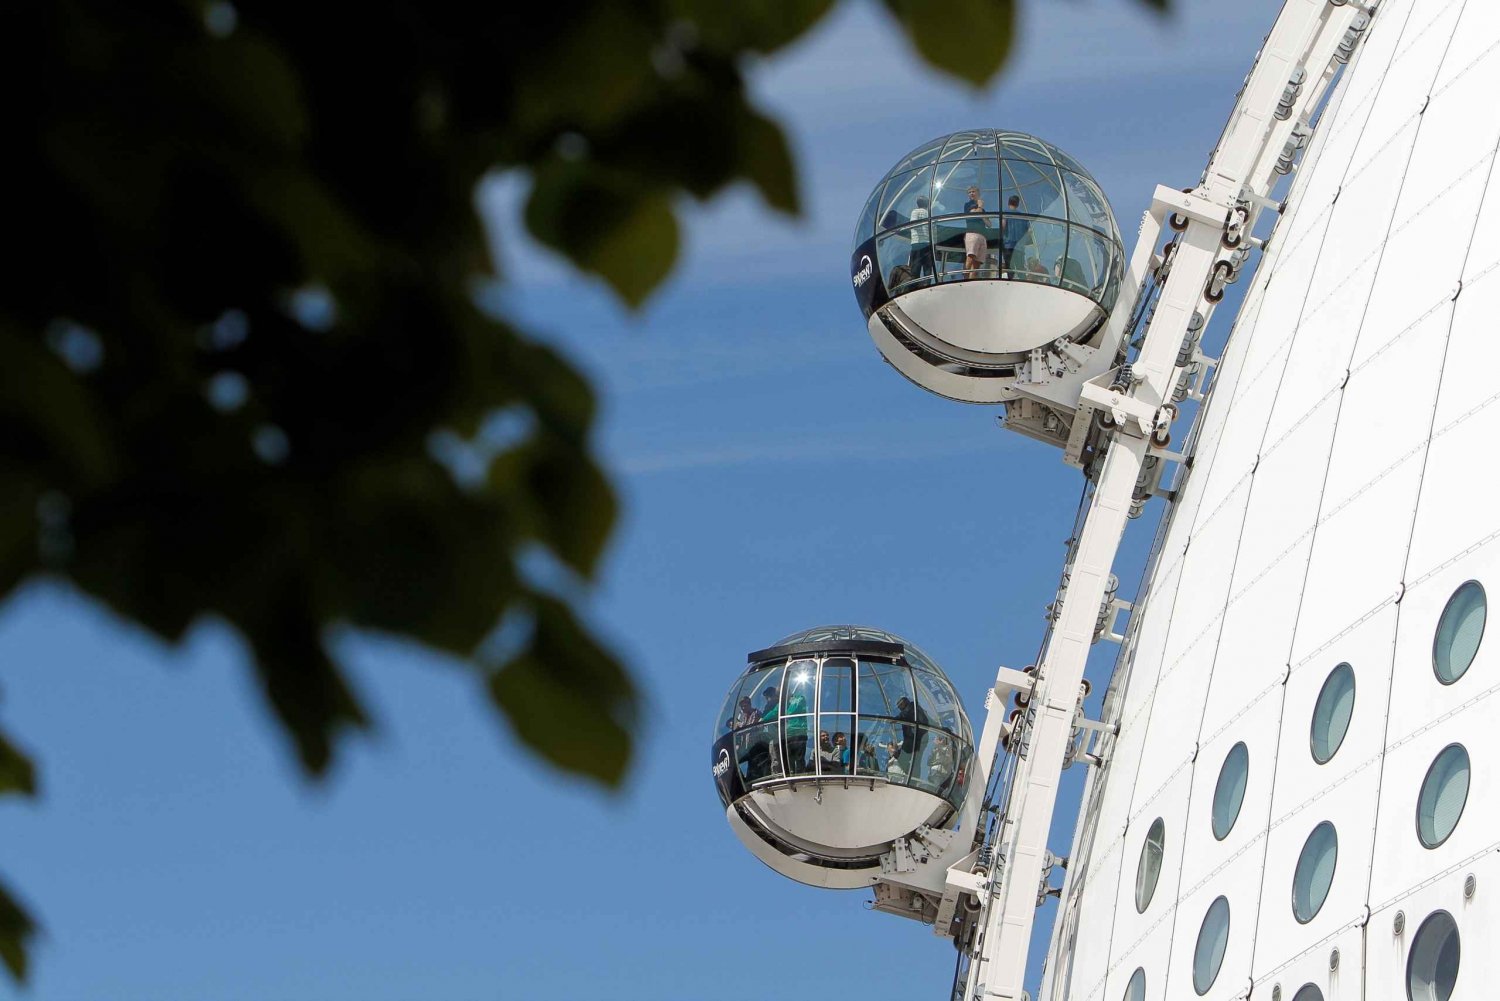 Tukholma: SkyView Glass Gondola Ride